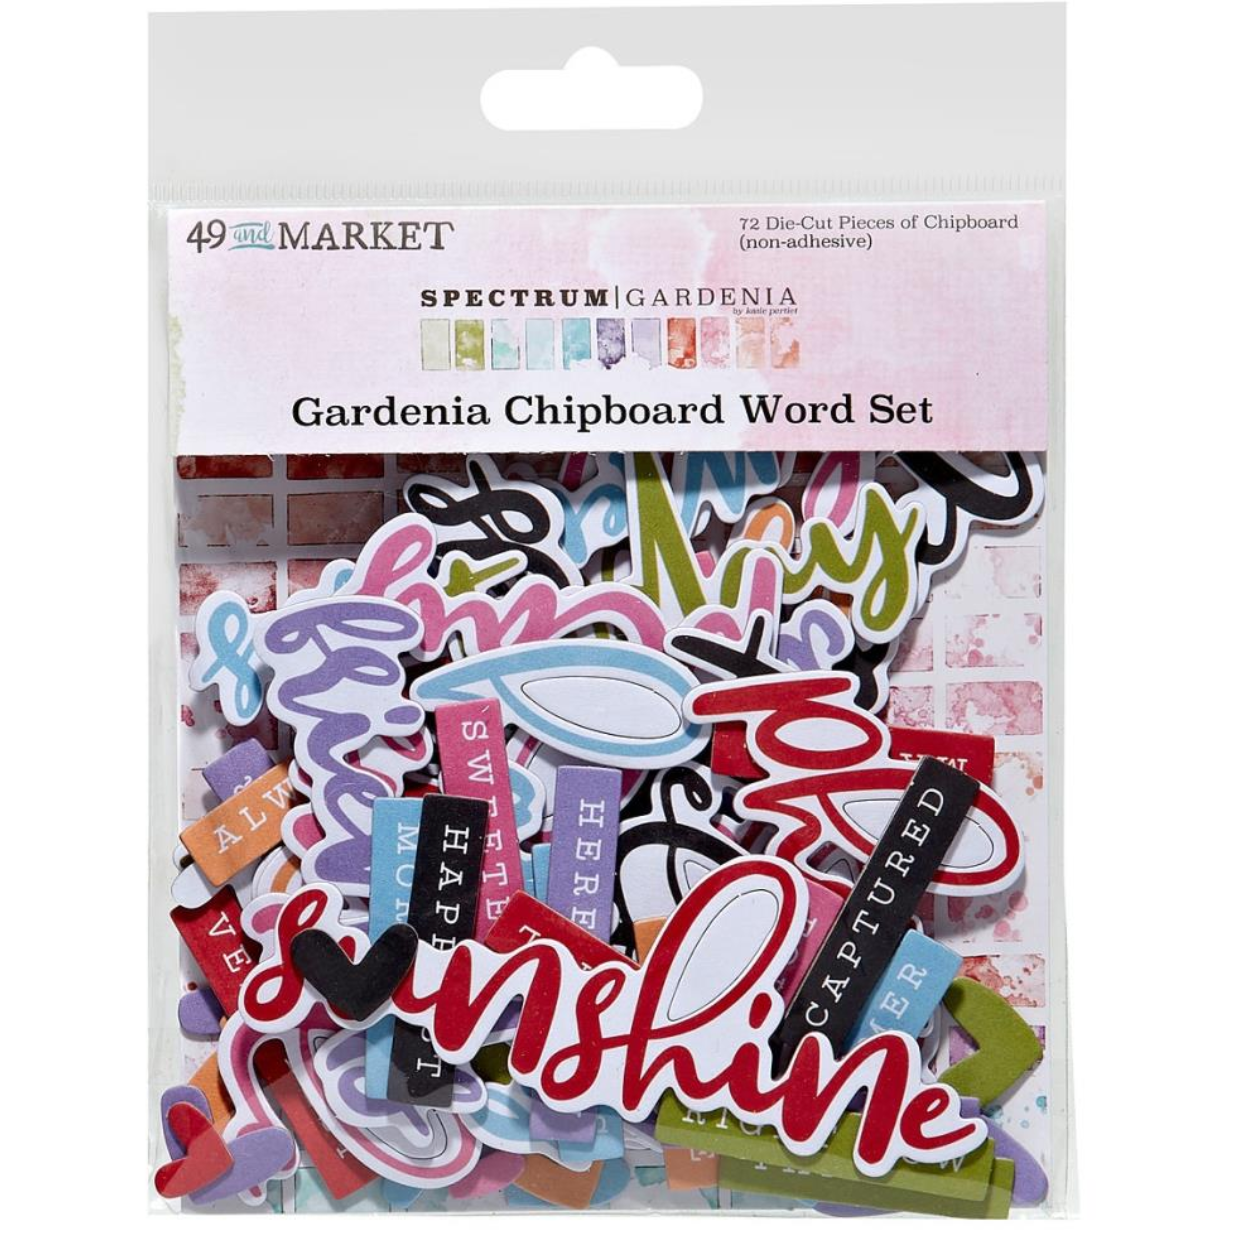 Chipboard Word Set - Spectrum Gardenia - 49 and Market